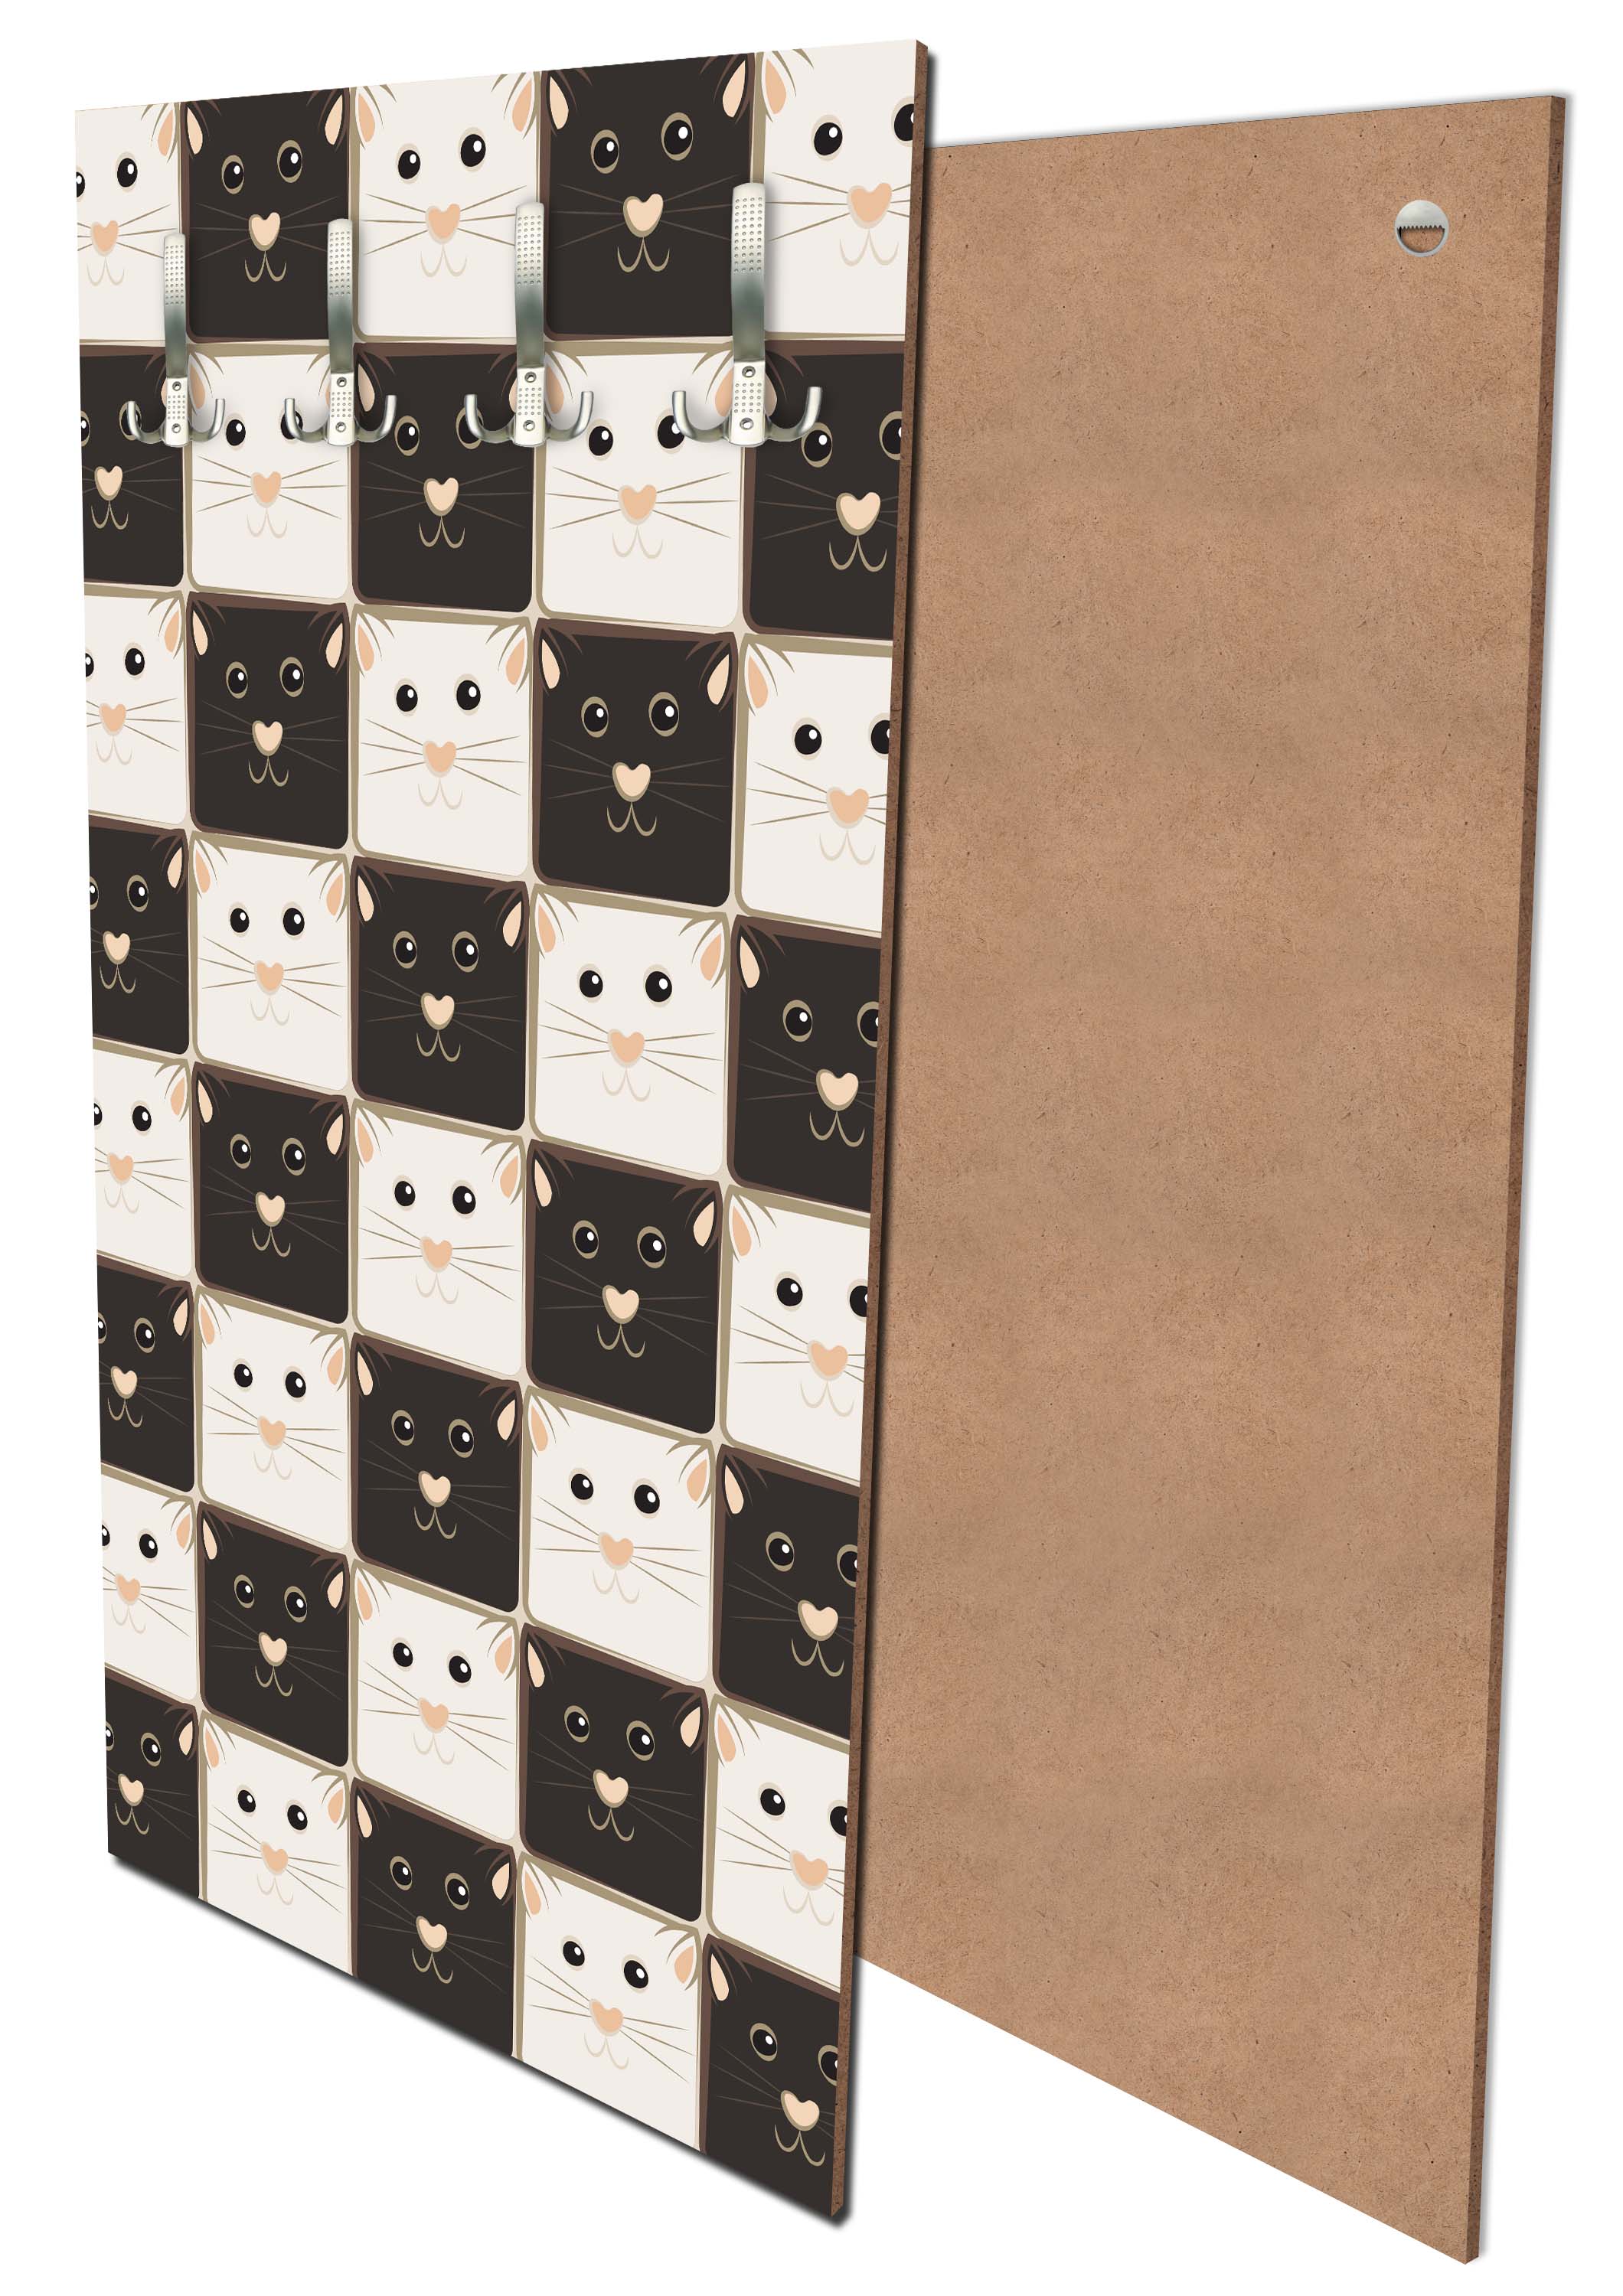 Garderobe Schachbrett aus schwarzen und weißen Katzen M0984 entdecken - Bild 1